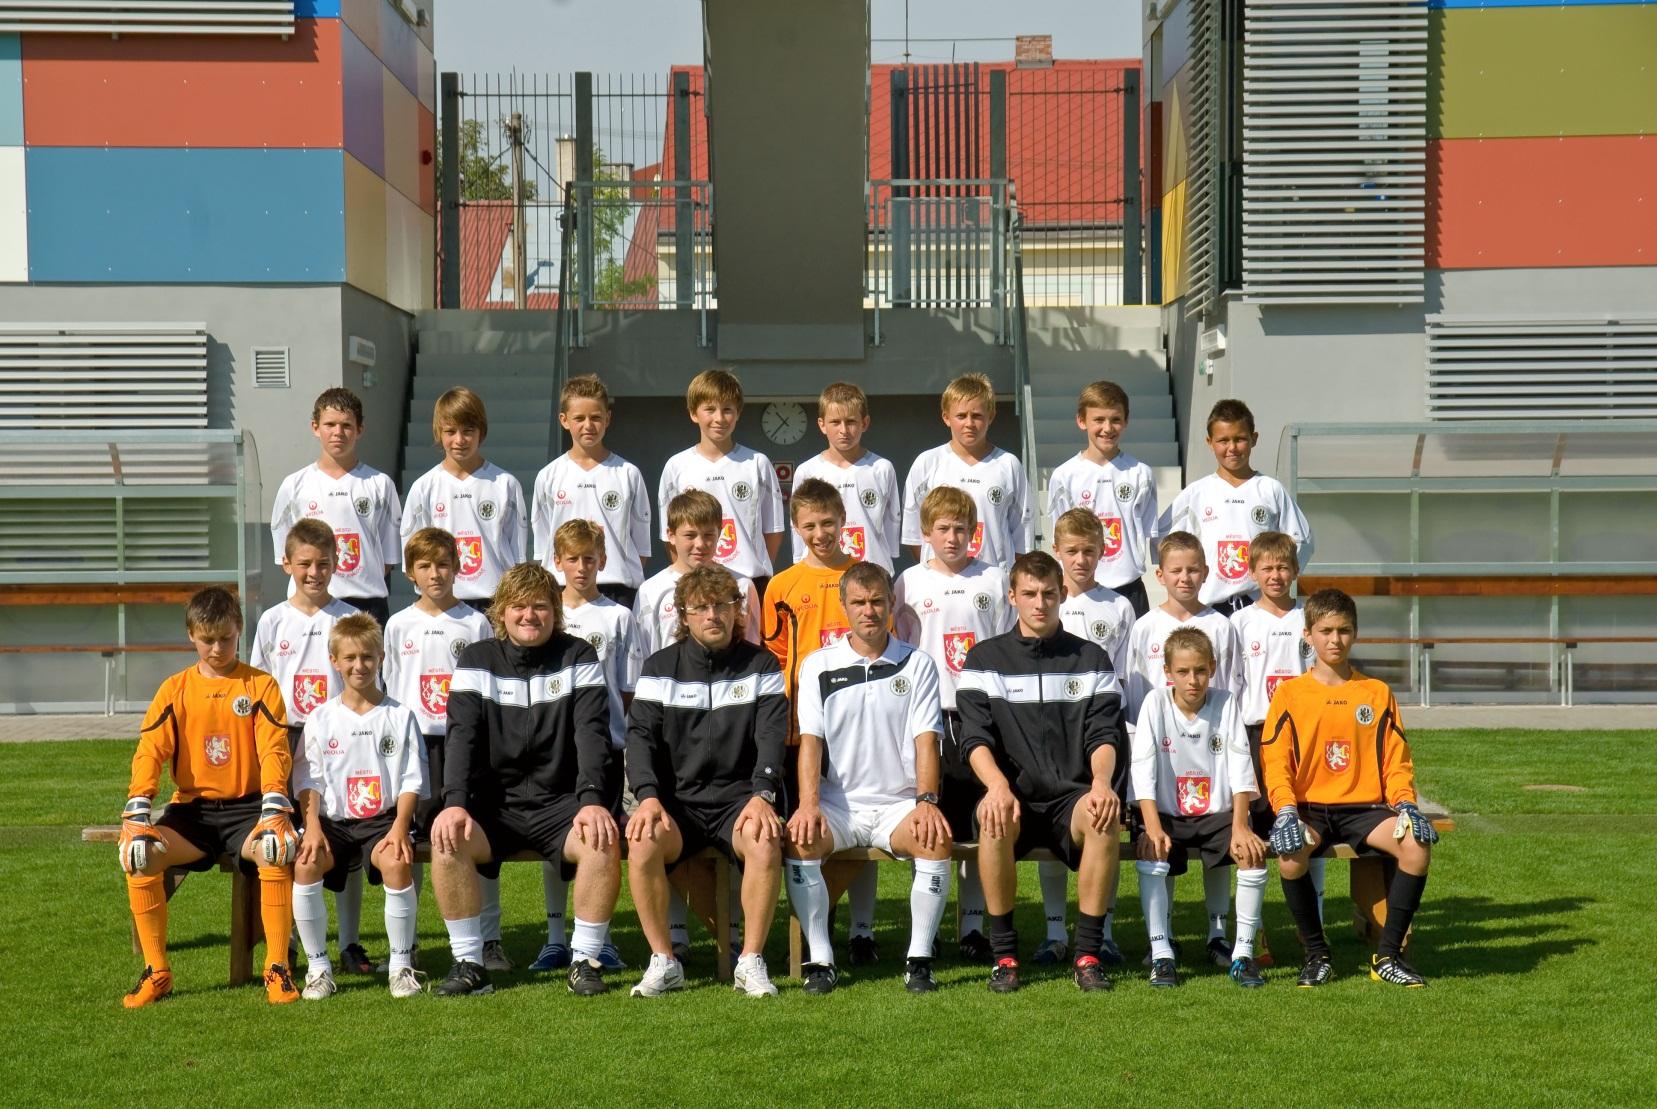 FC Hradec Králové U13 Ročník 2000, který má za sebou spoustu úspěšných mezinárodních zkušeností z turnajů ve středoevropském regionu, ale pro nás zůstává hlavní prioritou naučit borce perfektně